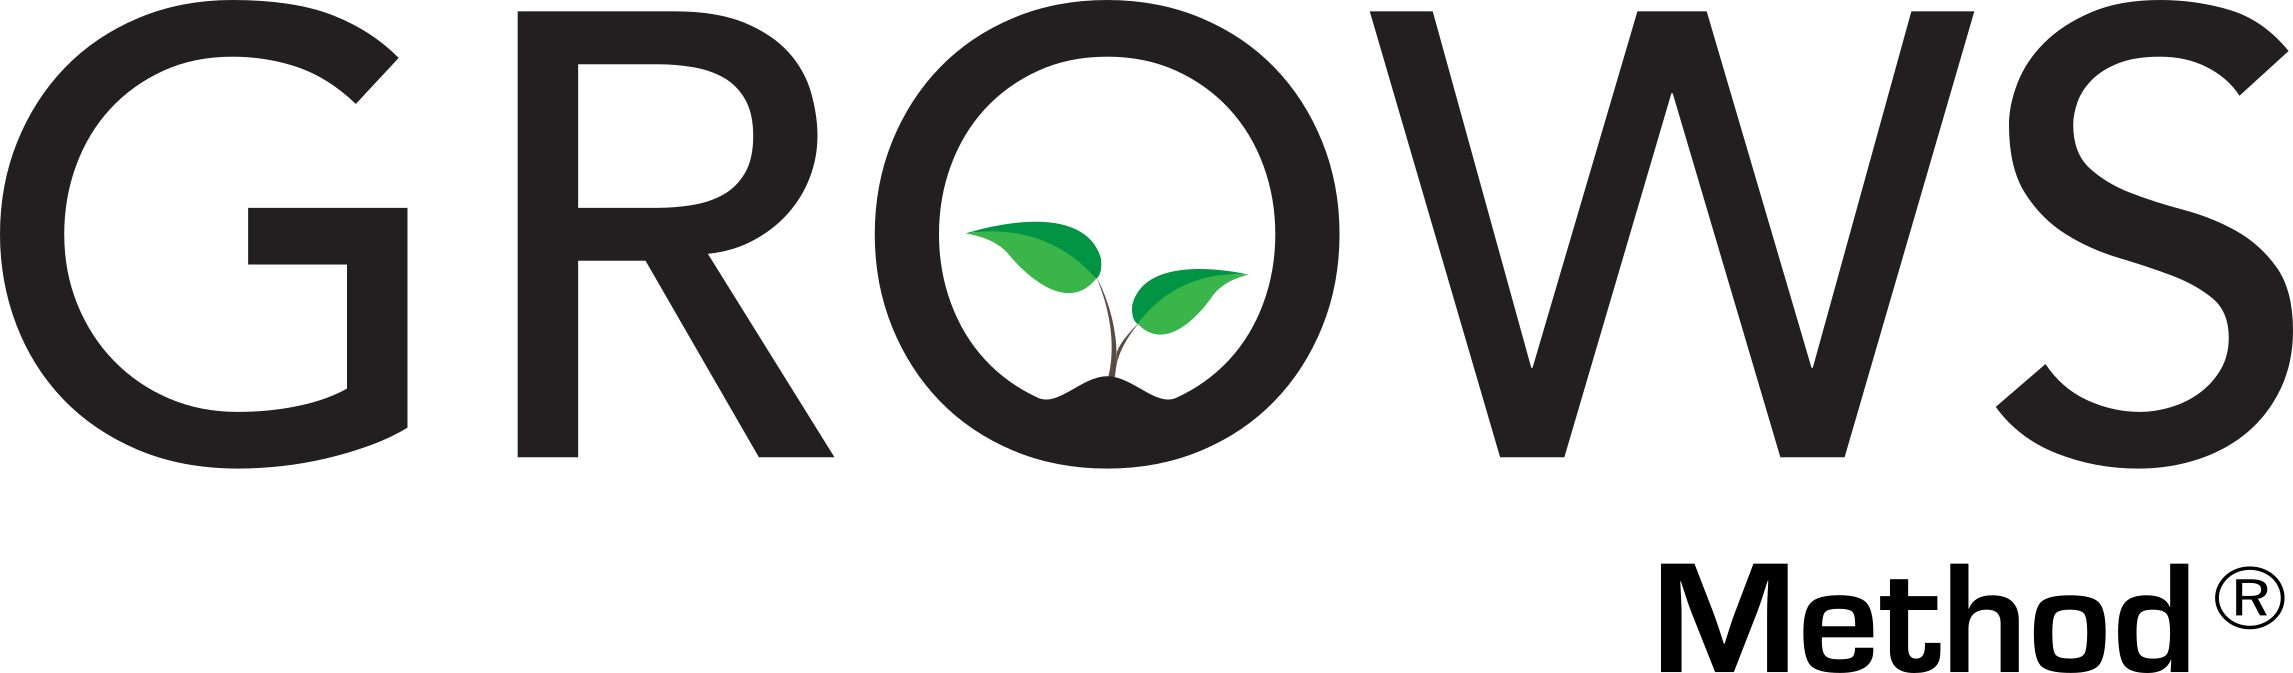 GROWS logo